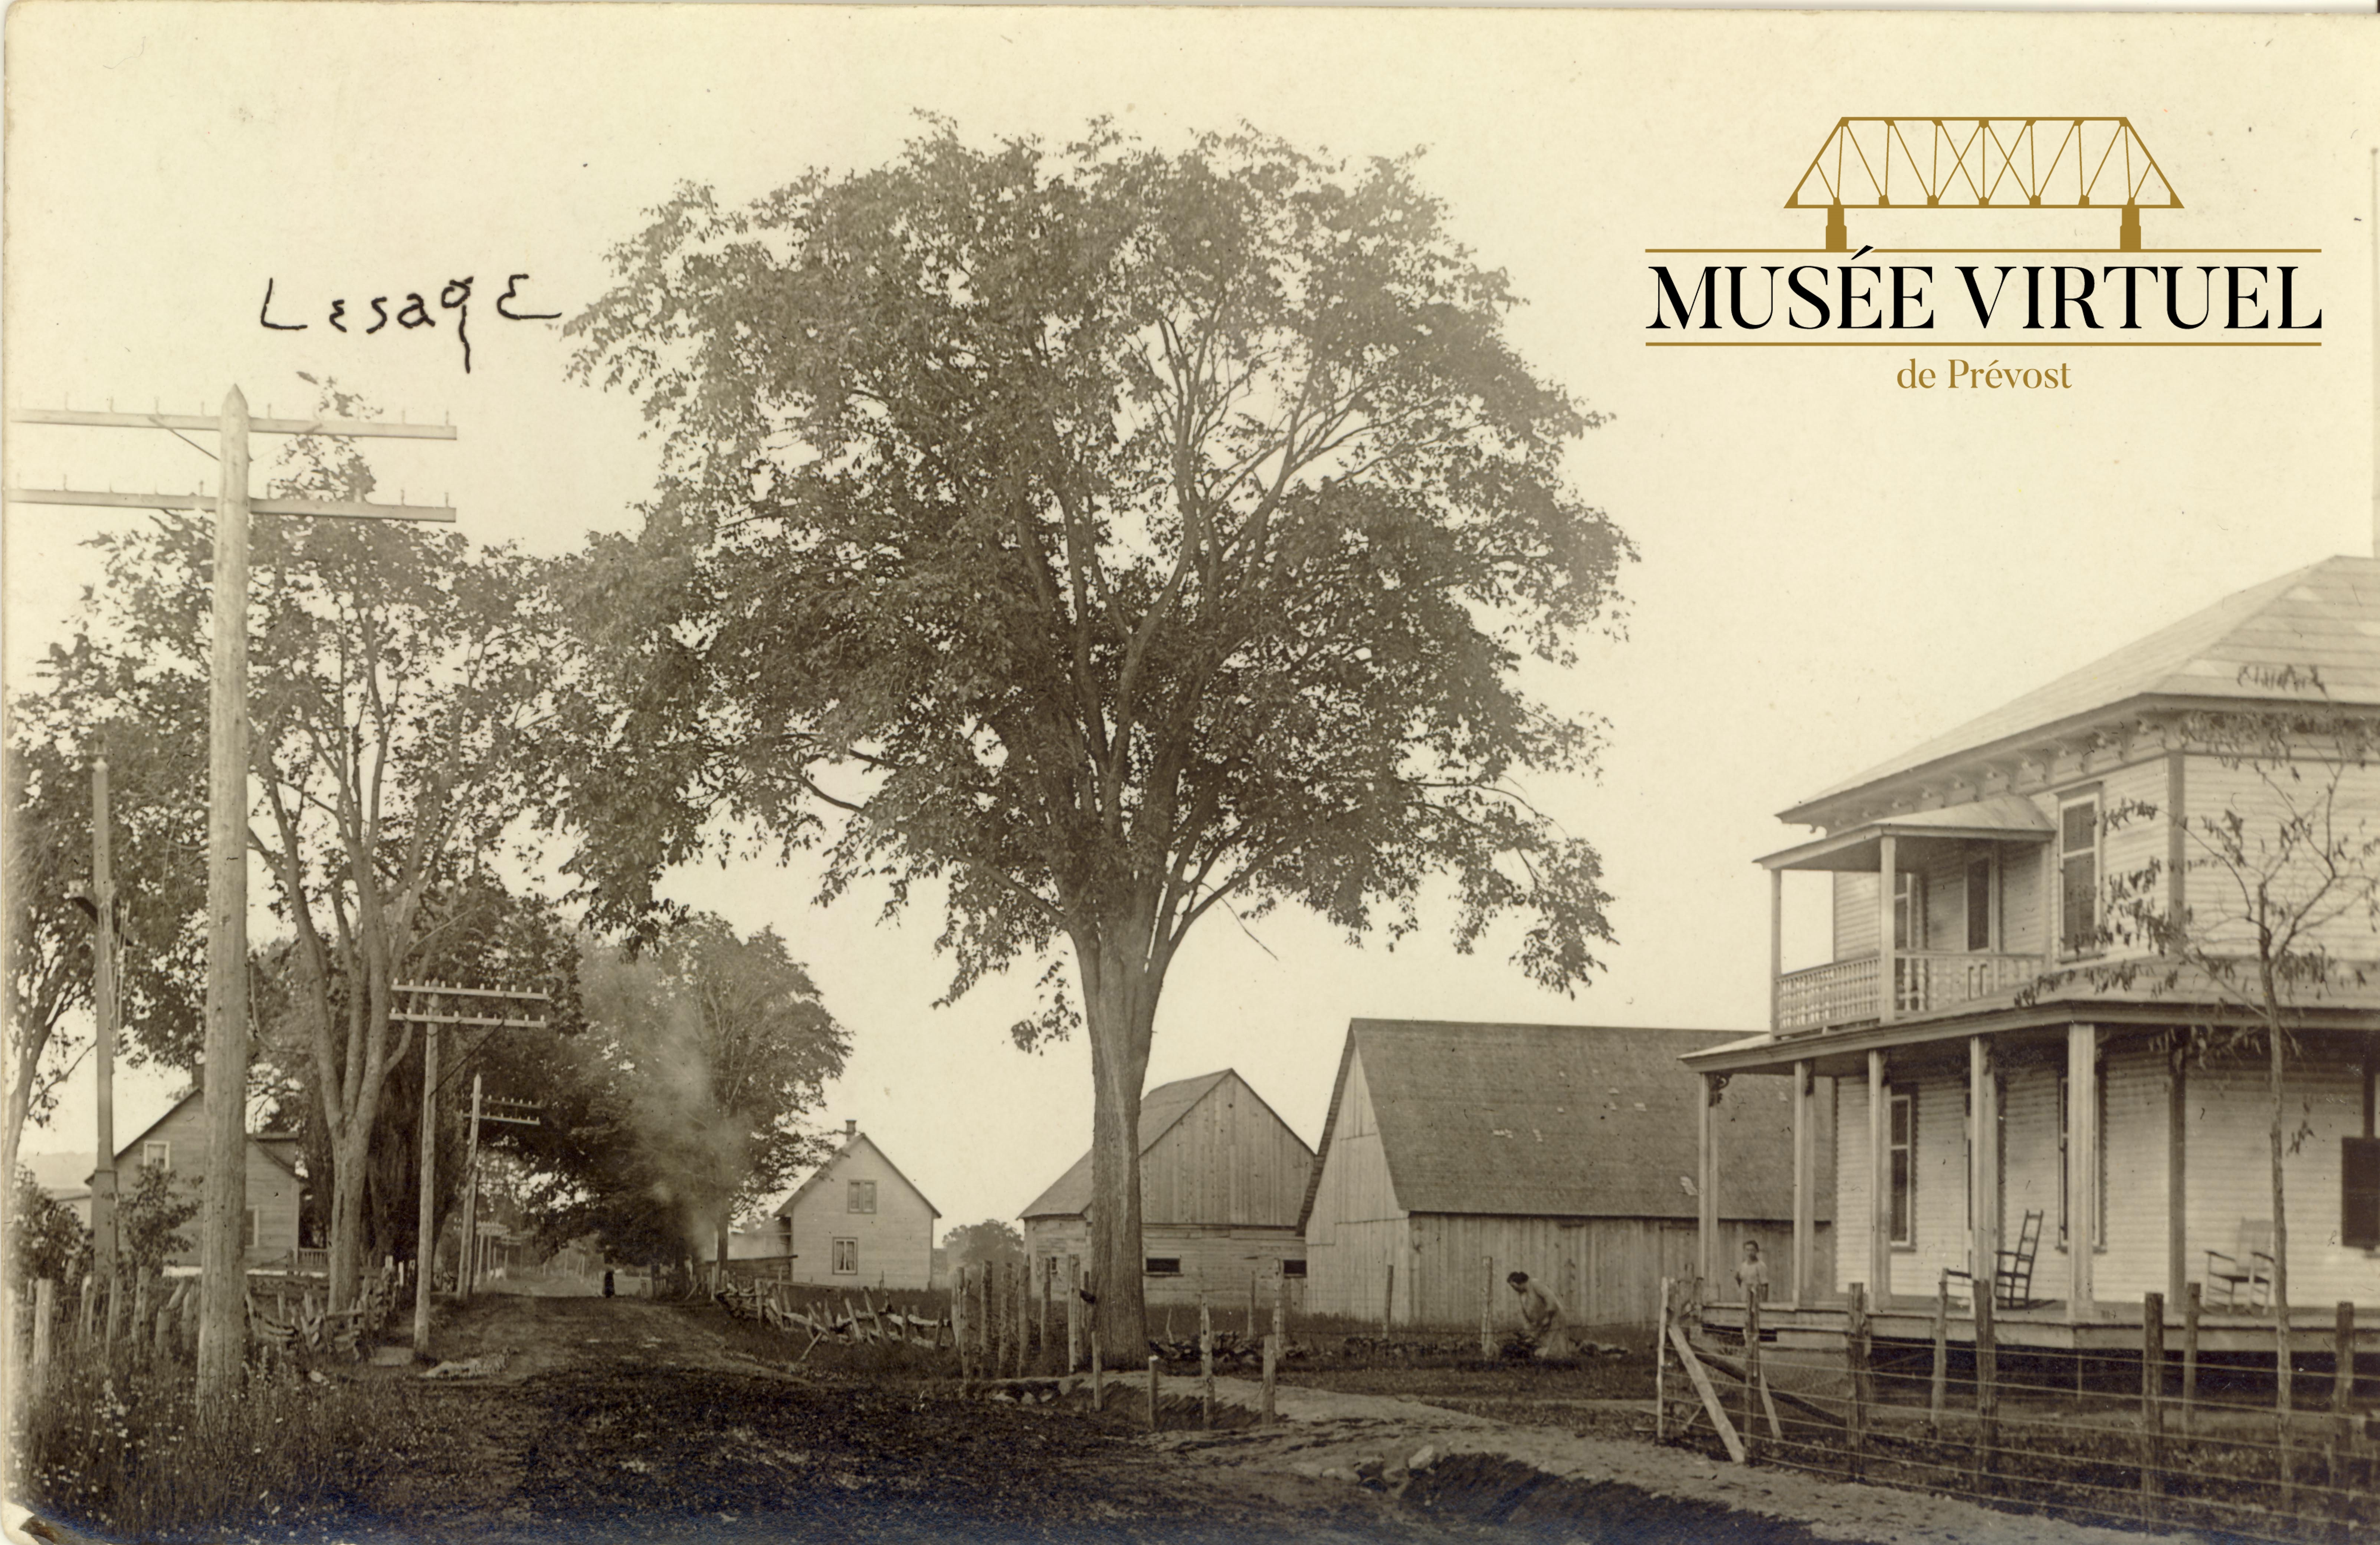 1. Maison d'Euclide Lesage située à droite vue du sud, voisin des bâtiments de son frère Léopold. Au fond, à droite, on voit la maison Huot, vers les années 1920 - Collection de Guy Thibault